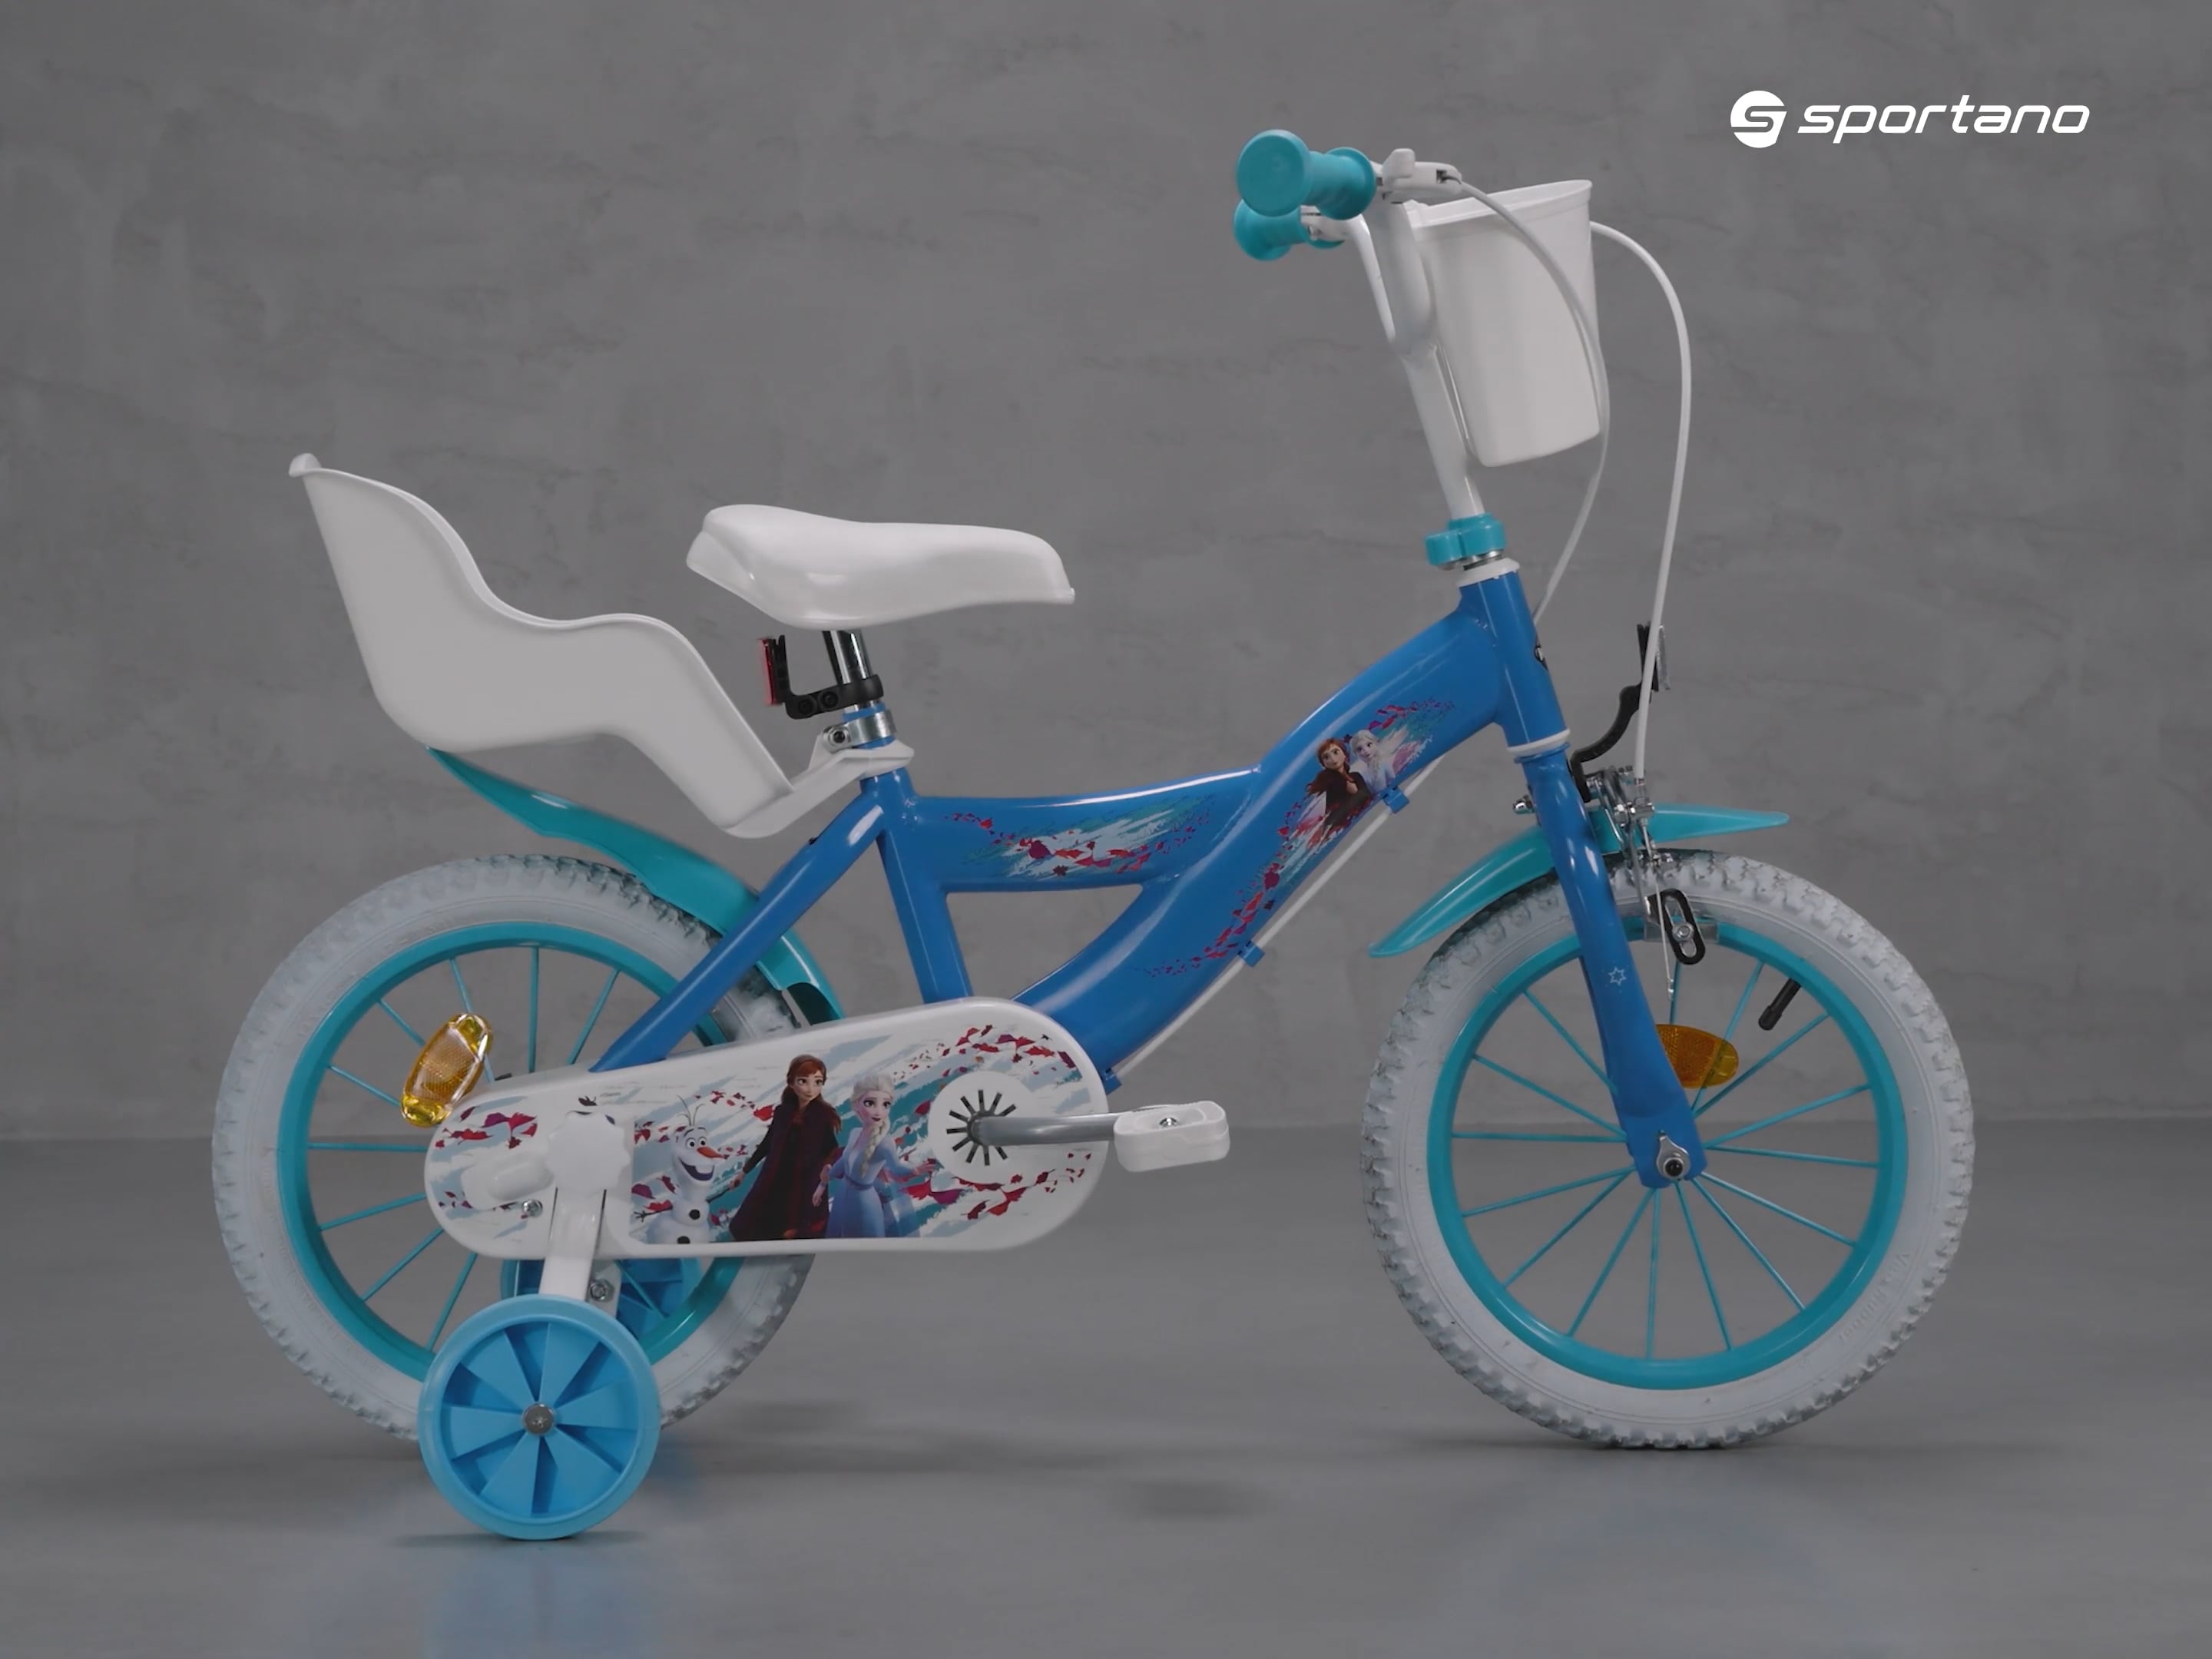 Huffy Frozen kék 24291W gyermek kerékpár